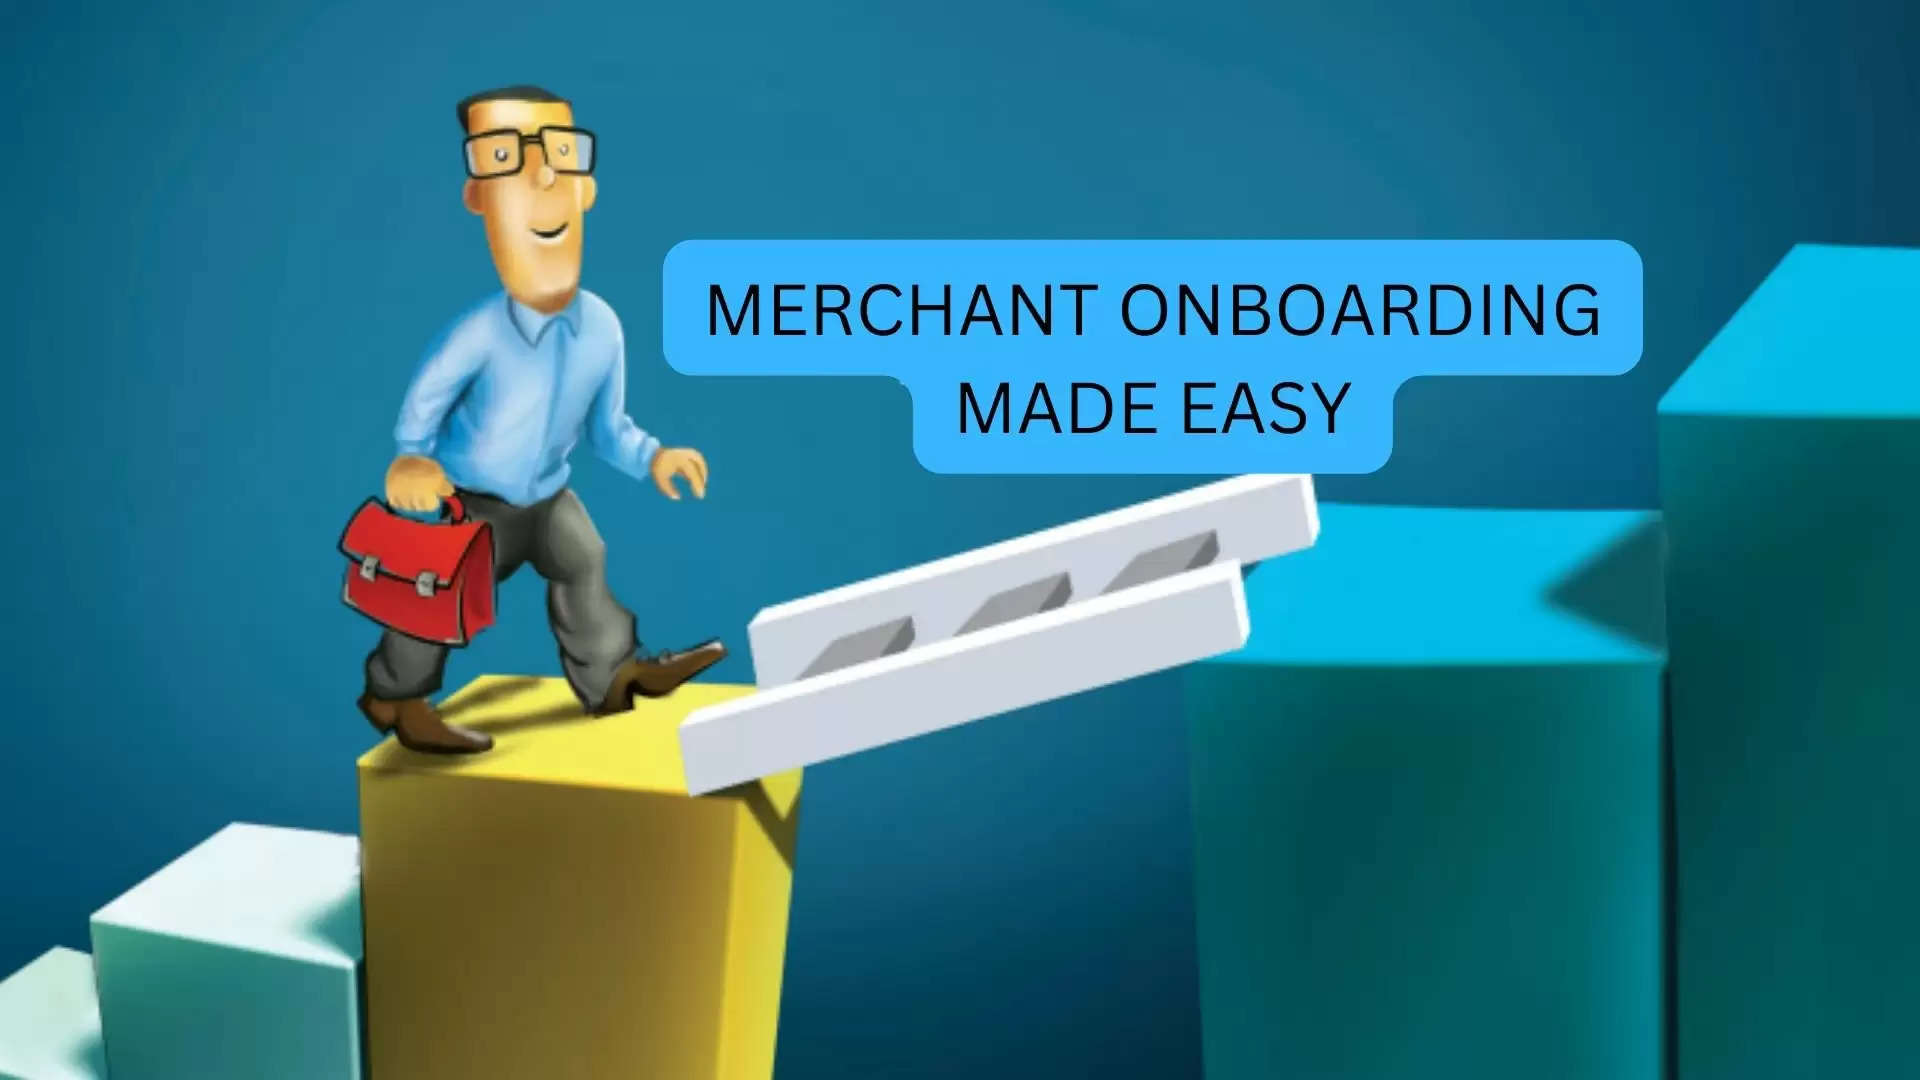 Making Merchant Onboarding Easy